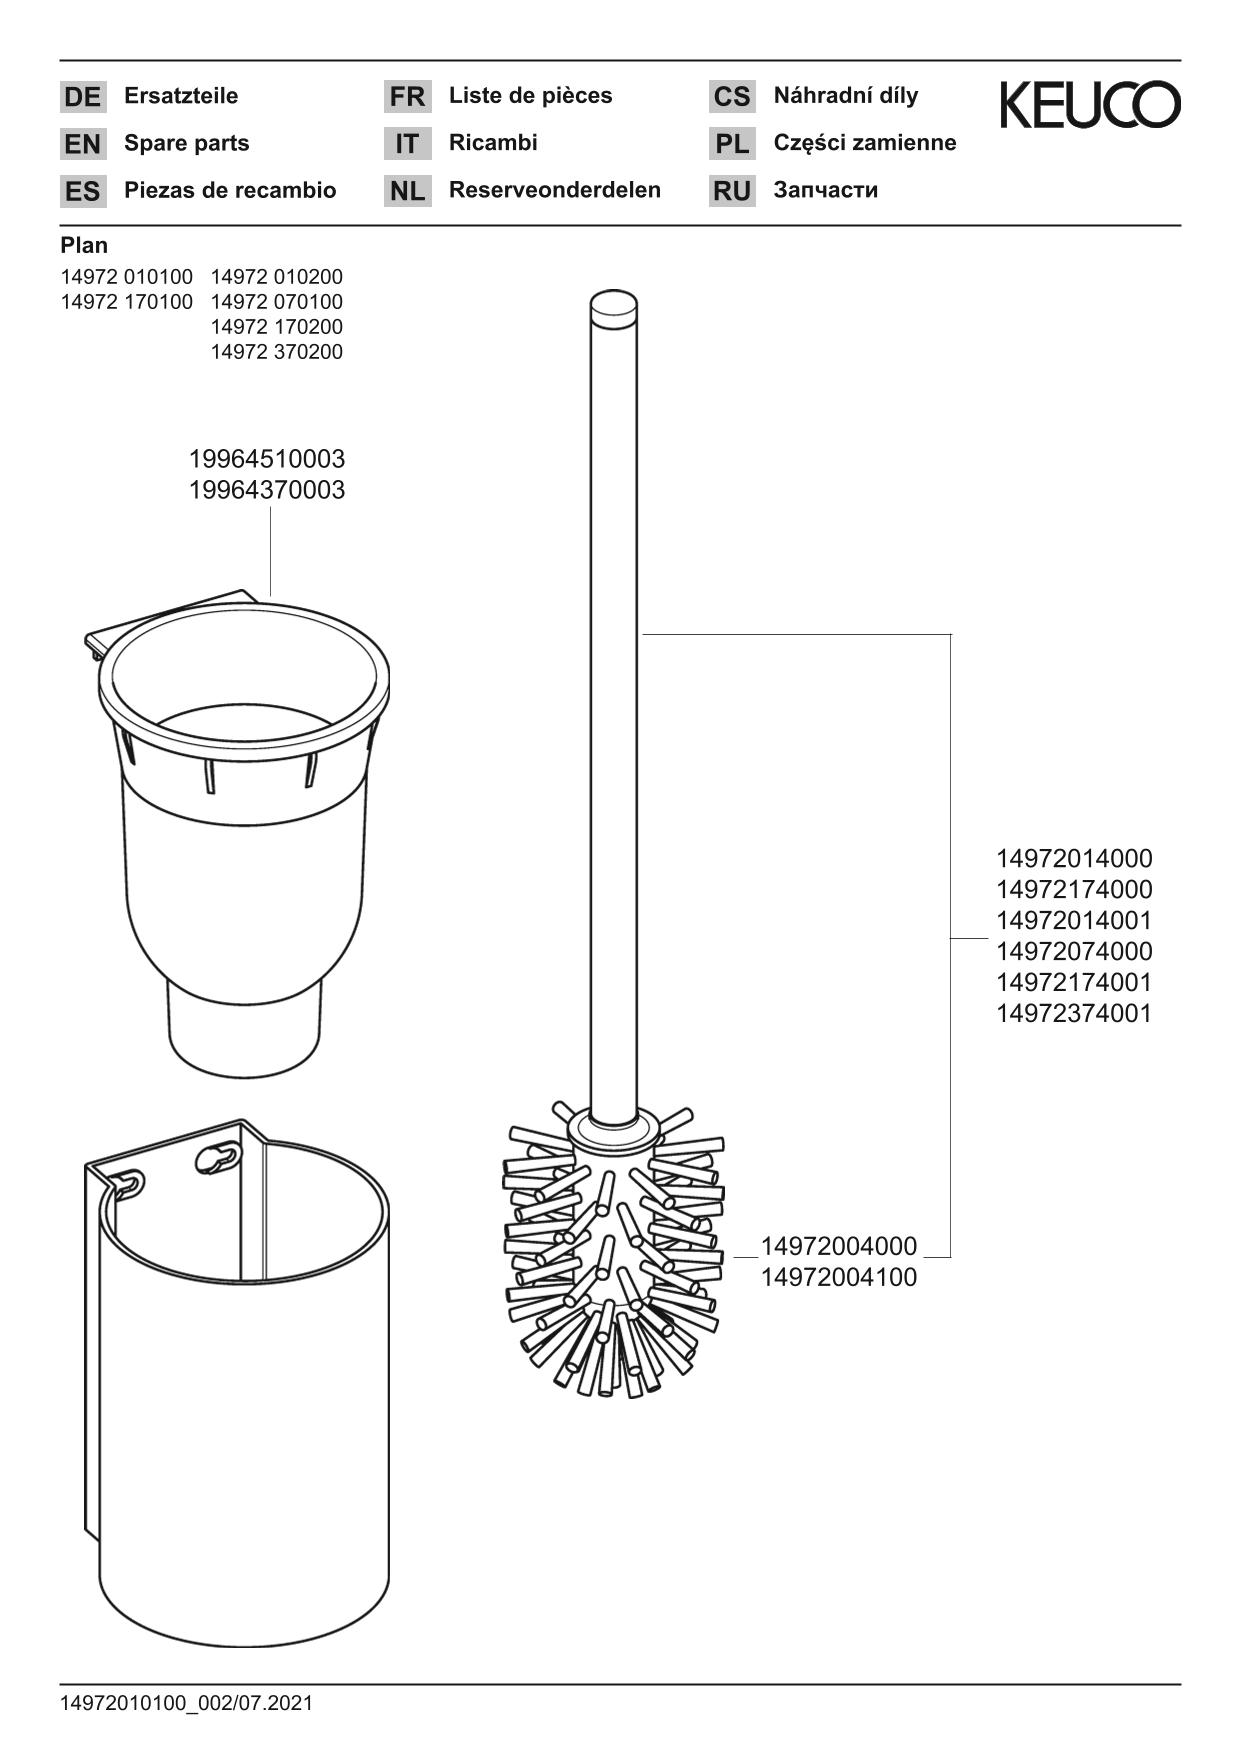 Plan 14972170200 Toilettenbürstengarnitur mit Kunststoff-Einsatz schwarz silber-eloxiert